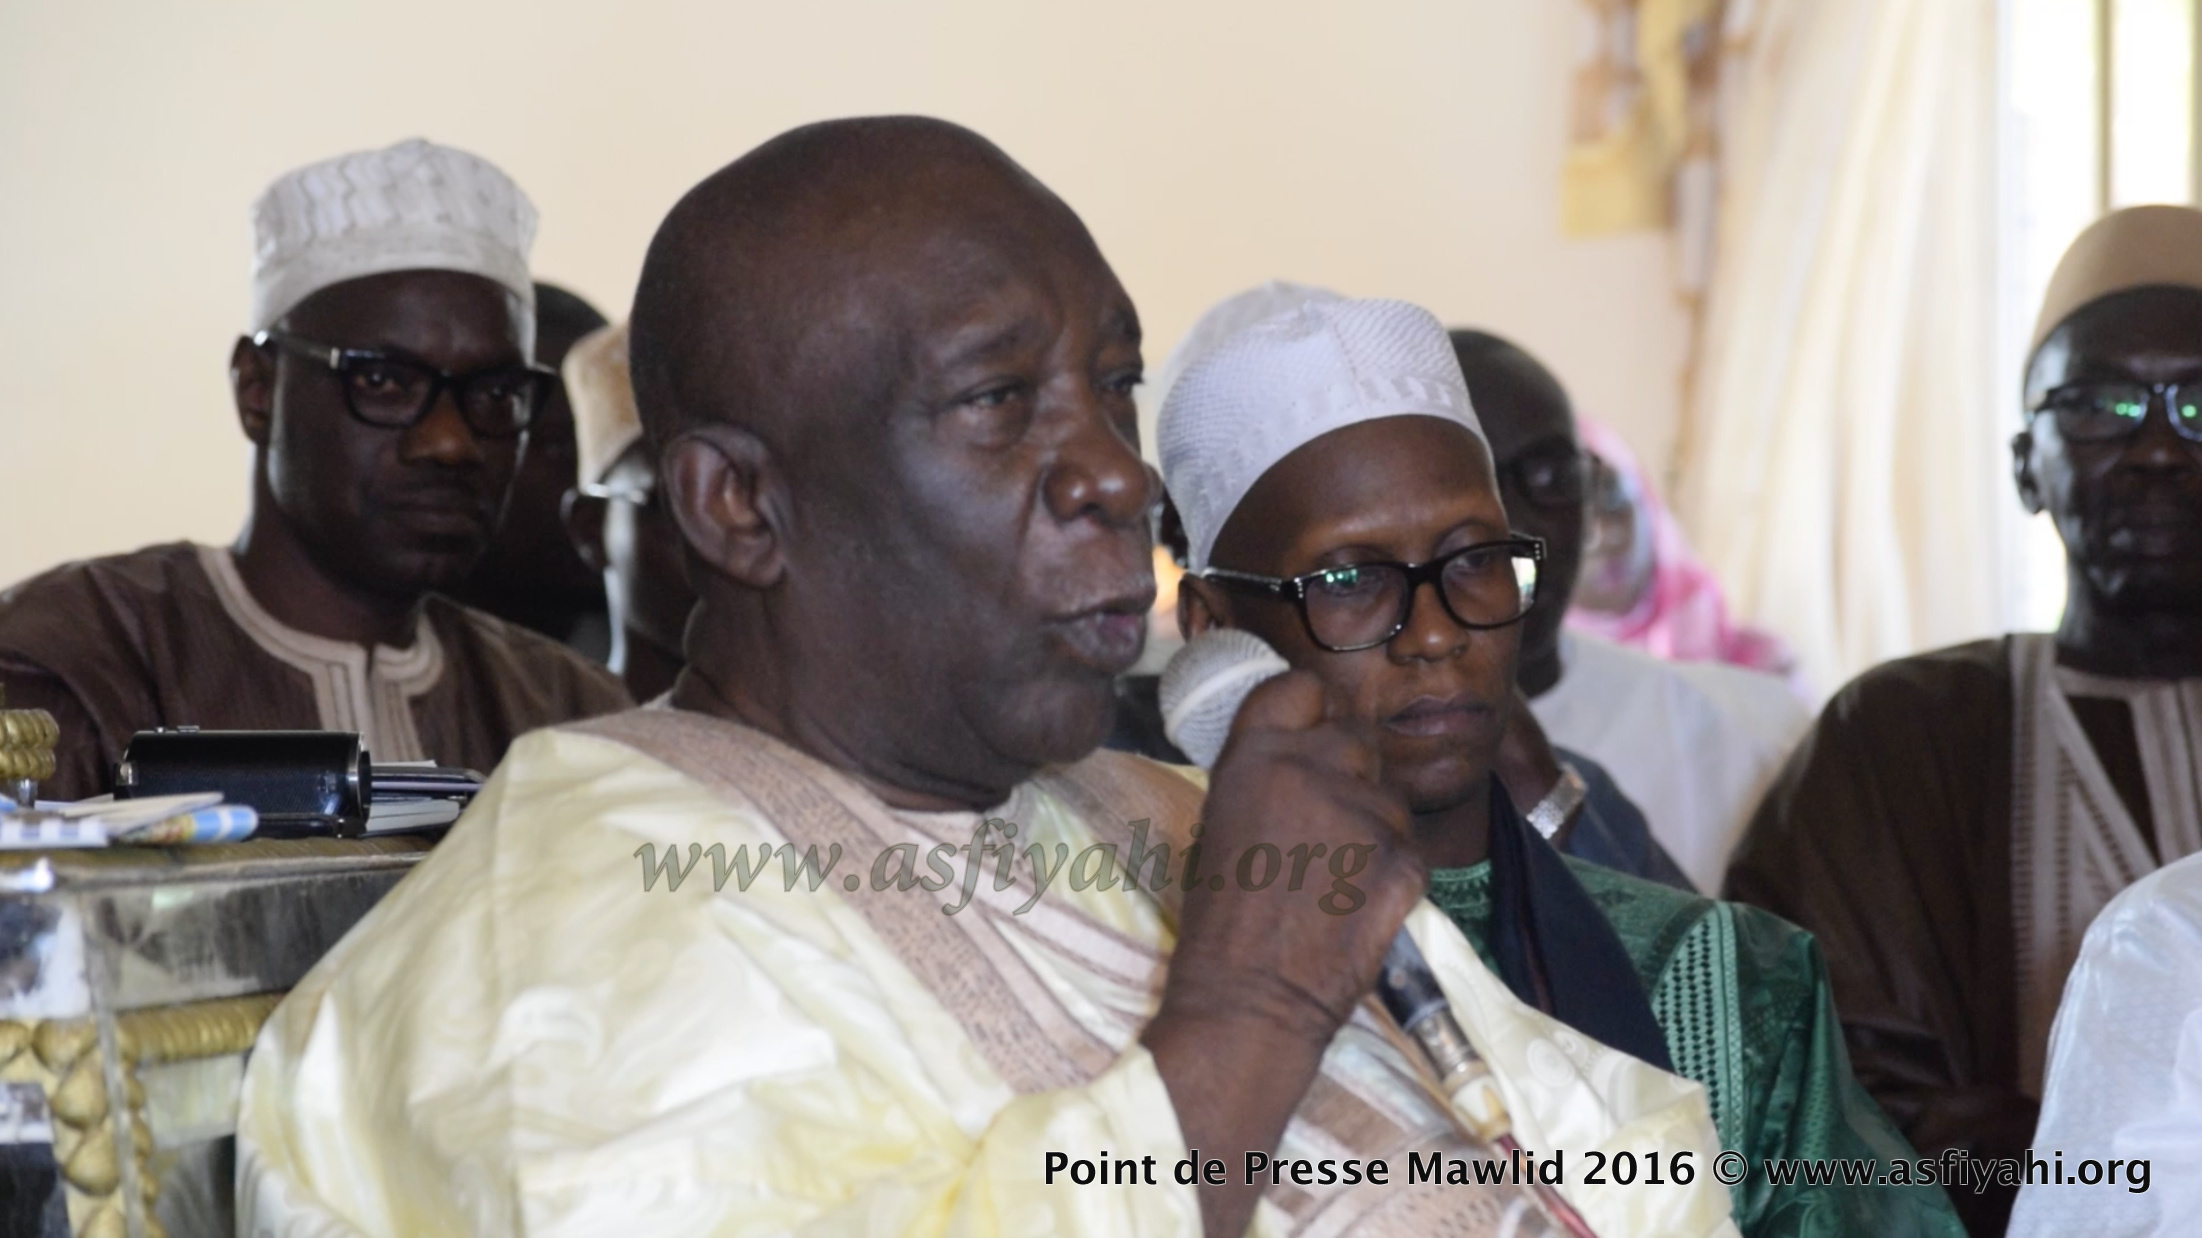 PHOTOS - GAMOU TIVAOUANE 2016 - Les Images de la Conférence de Presse de Serigne Abdoul Aziz Sy Al Amine